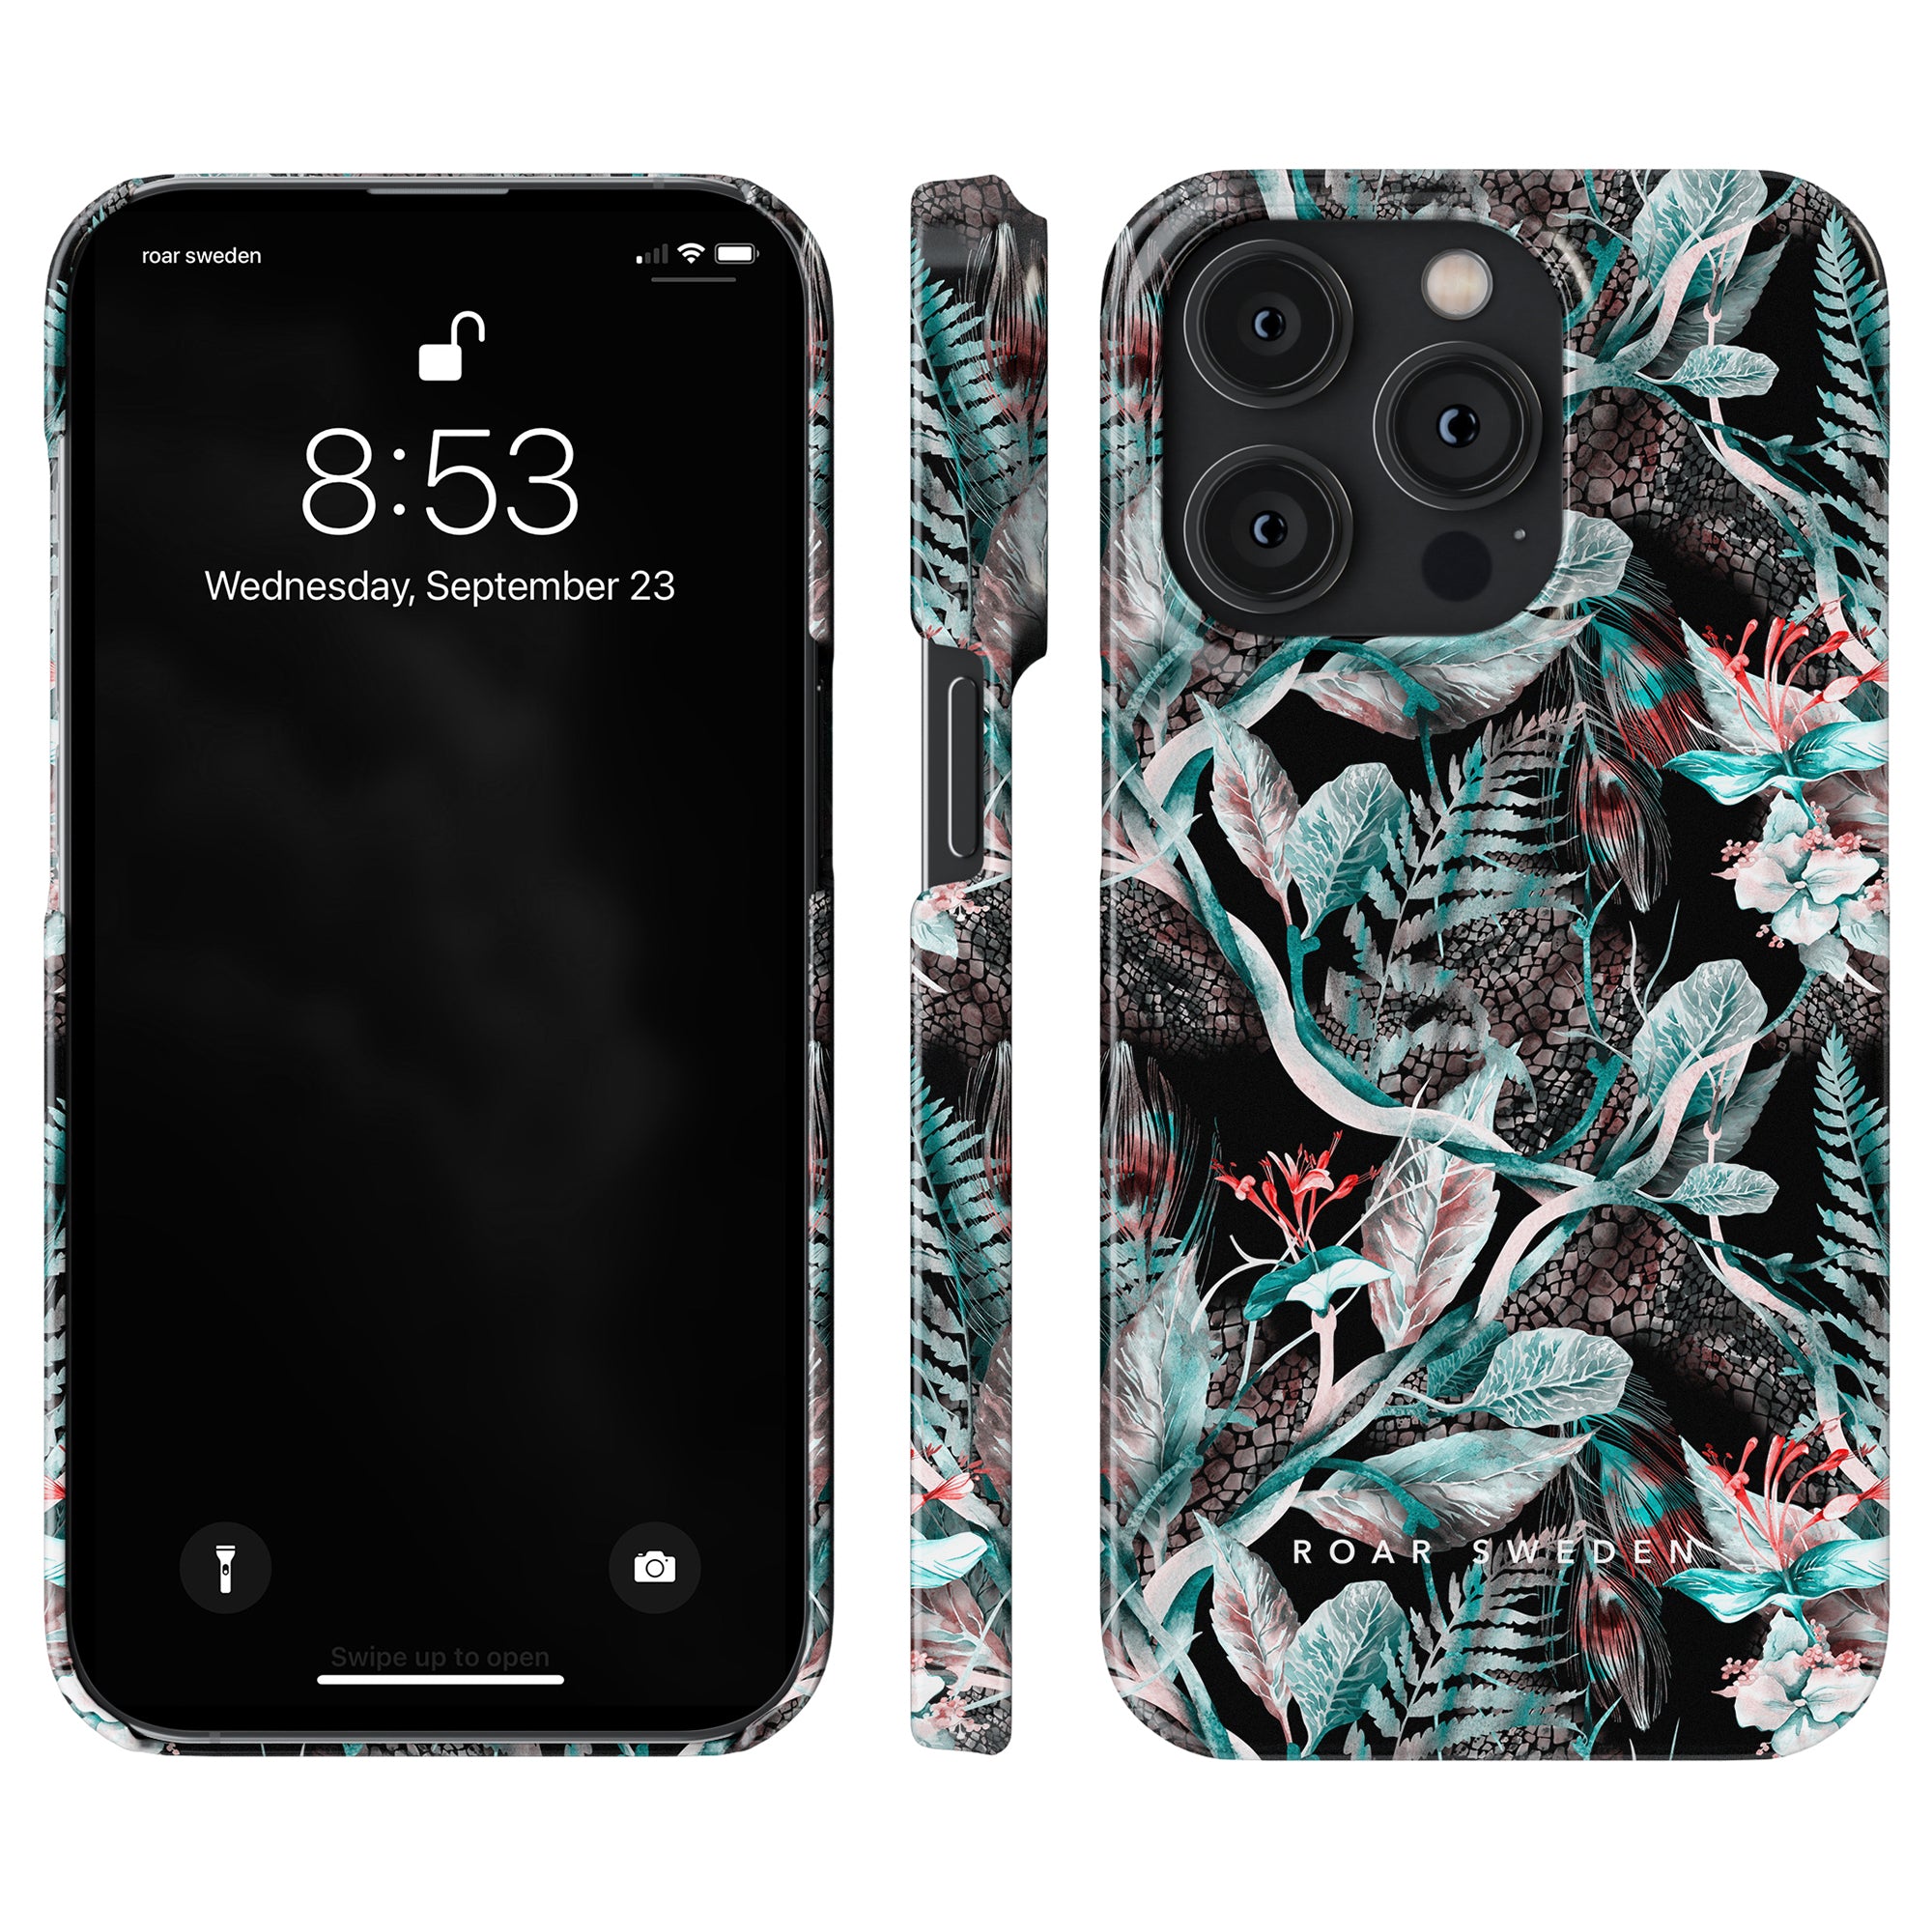 Beskrivning: Ett Snake Jungle - Slim case till iPhone 11 Pro med ett tropiskt lövtryck på det. Skalet ger full tillgång till alla knappar.